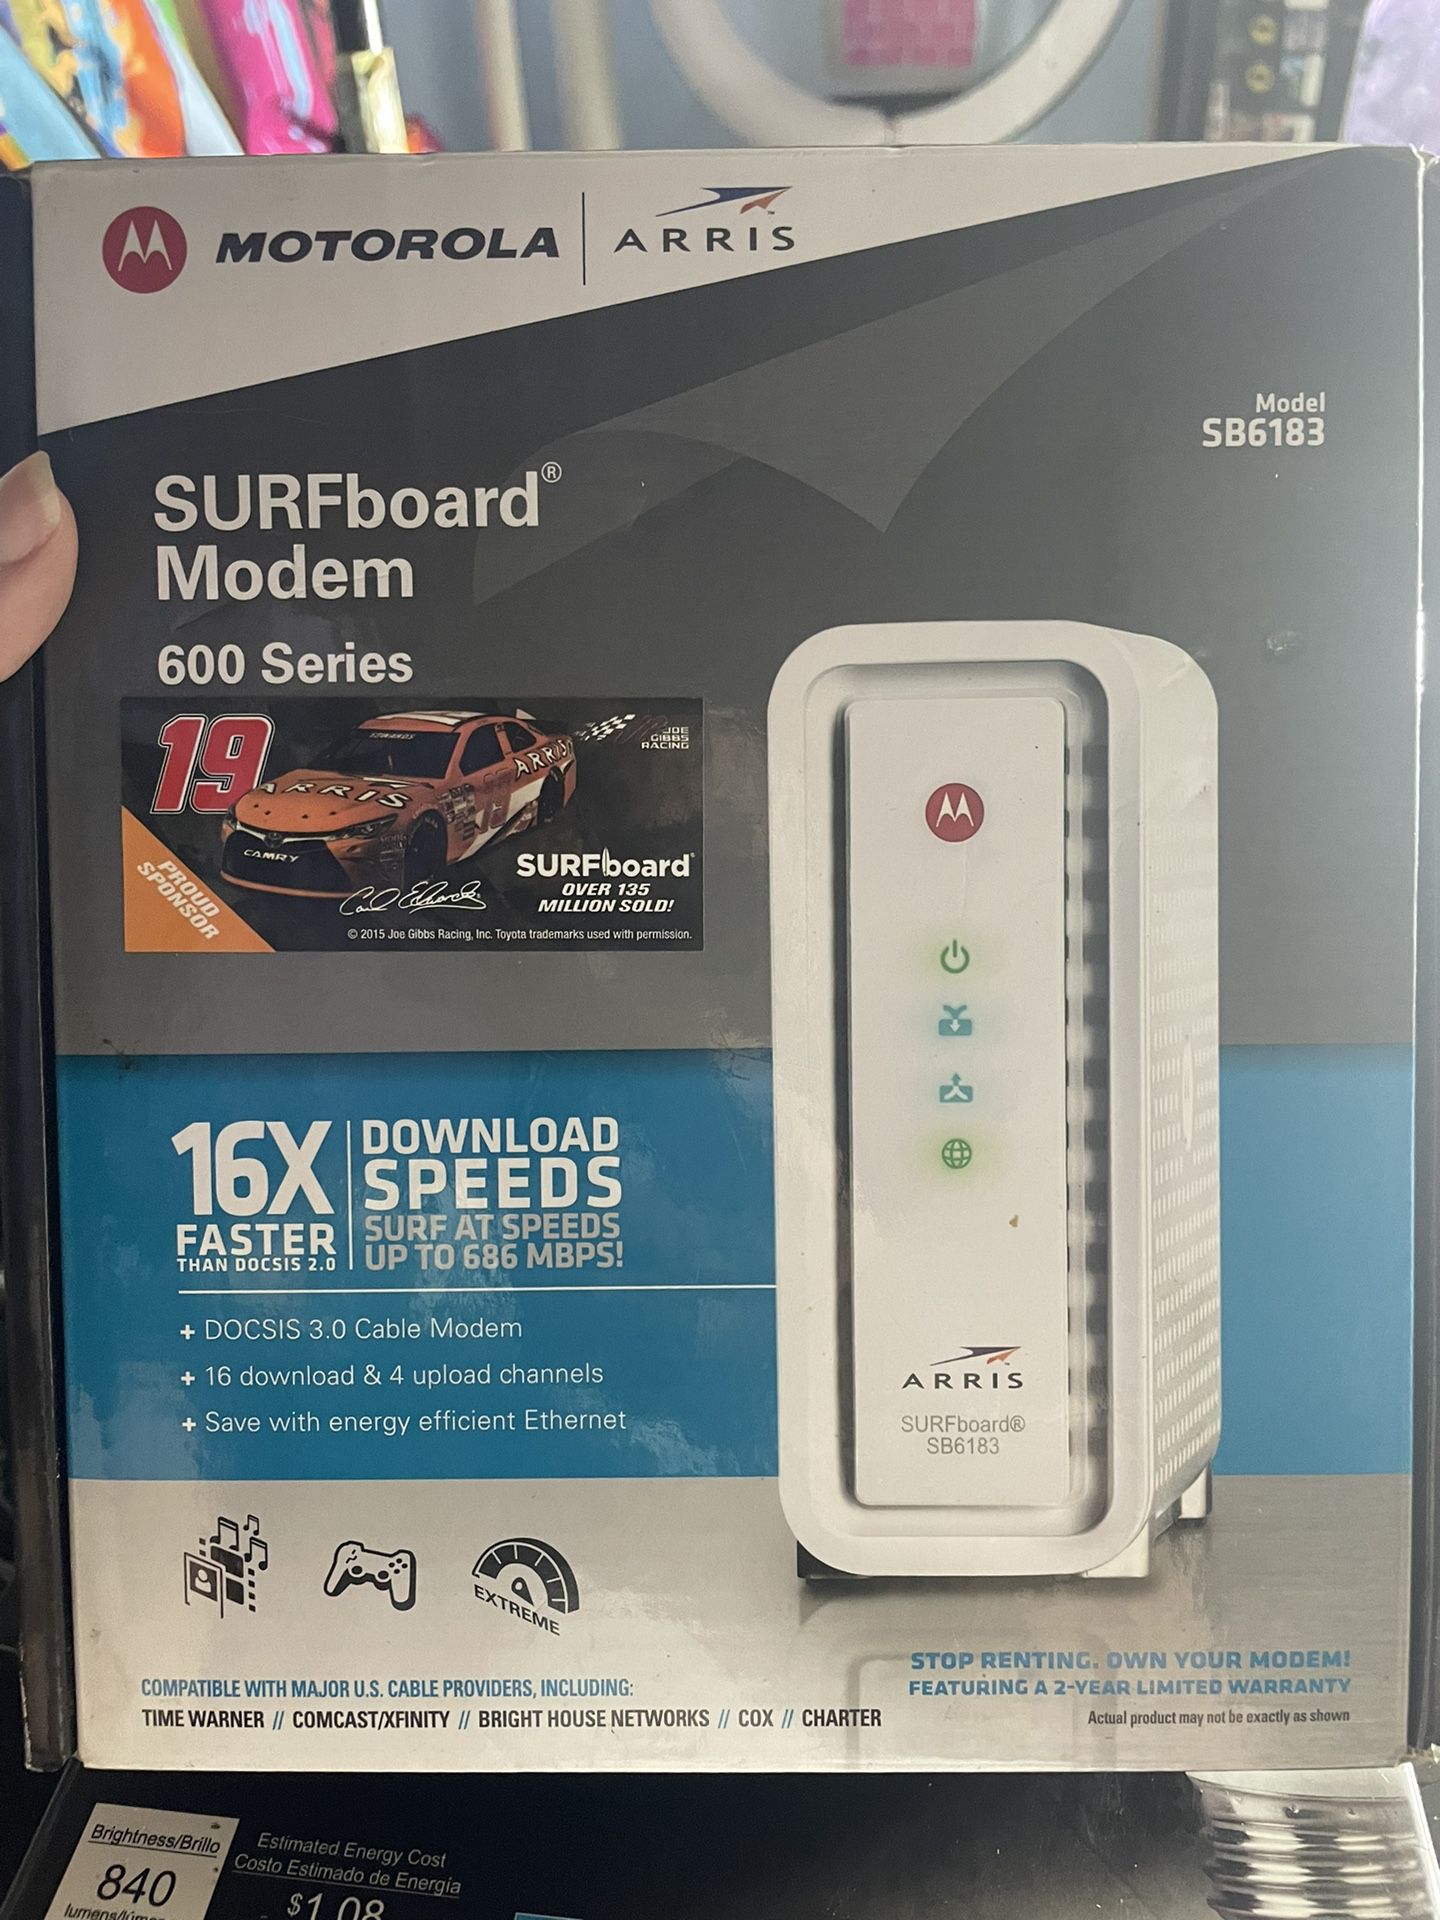 SURFboard Modem 600 Series